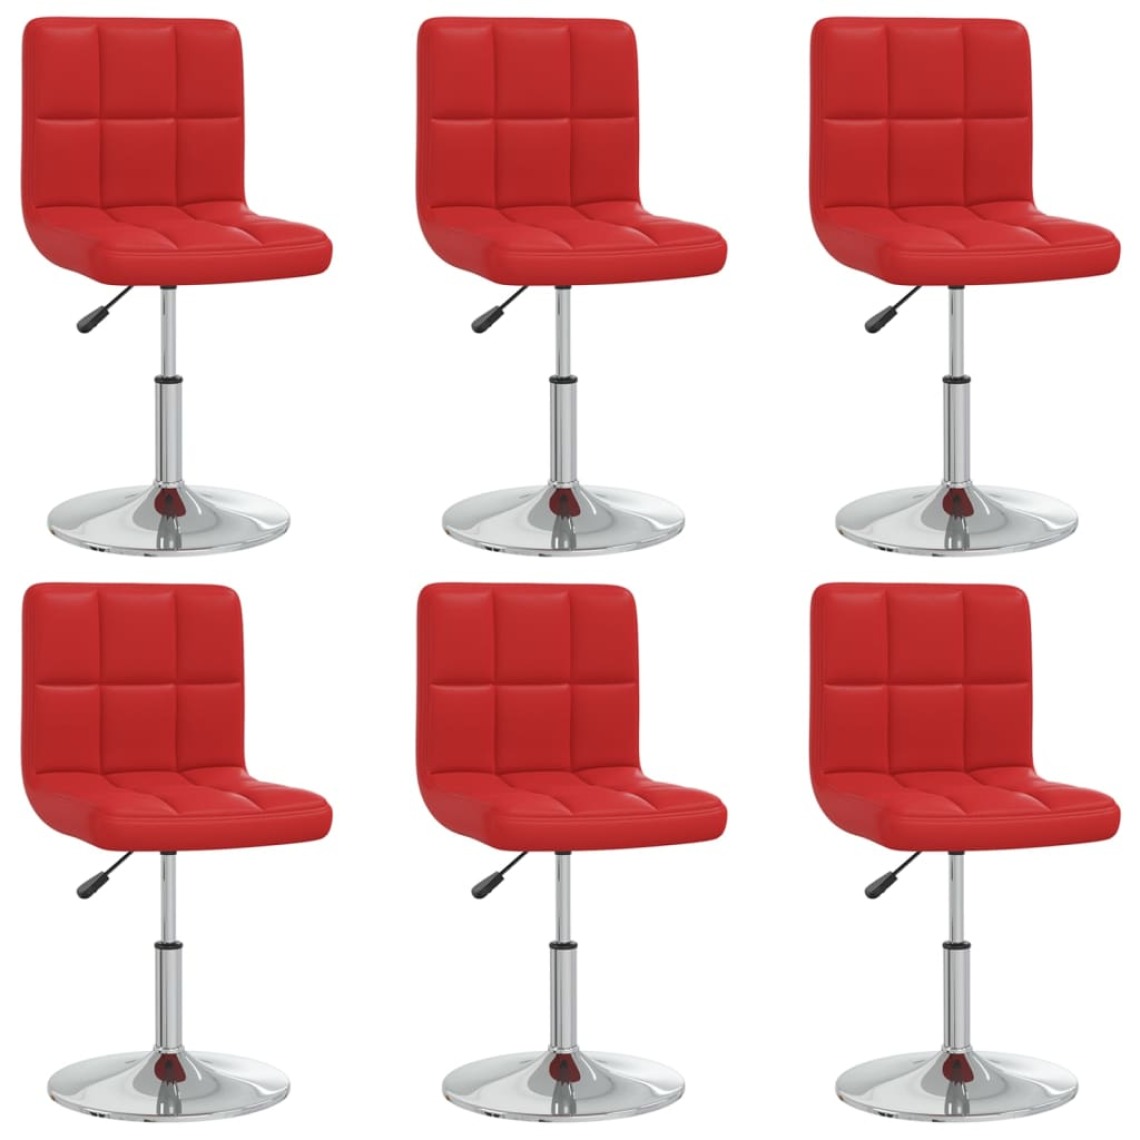 Vidaxl - vidaXL Chaises de salle à manger 6 pcs Rouge bordeaux Similicuir - Chaises